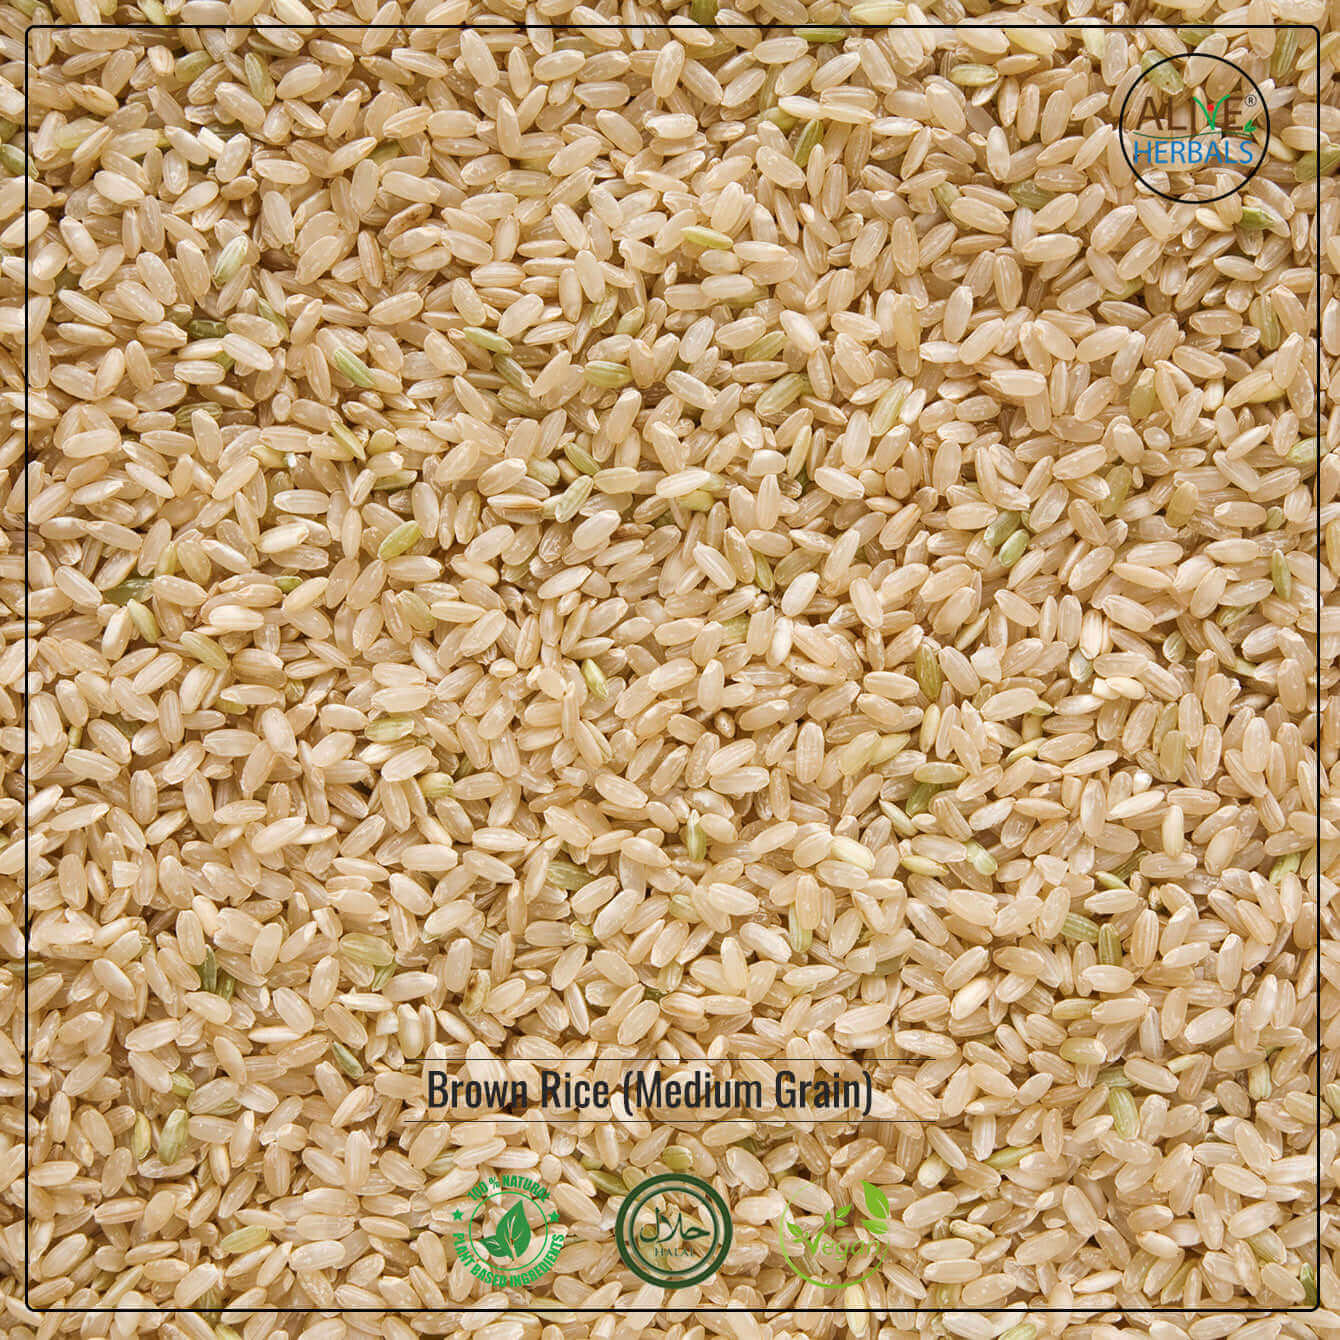 Brown Rice Medium Grain - Shop at Natural Food Store | Alive Herbals.